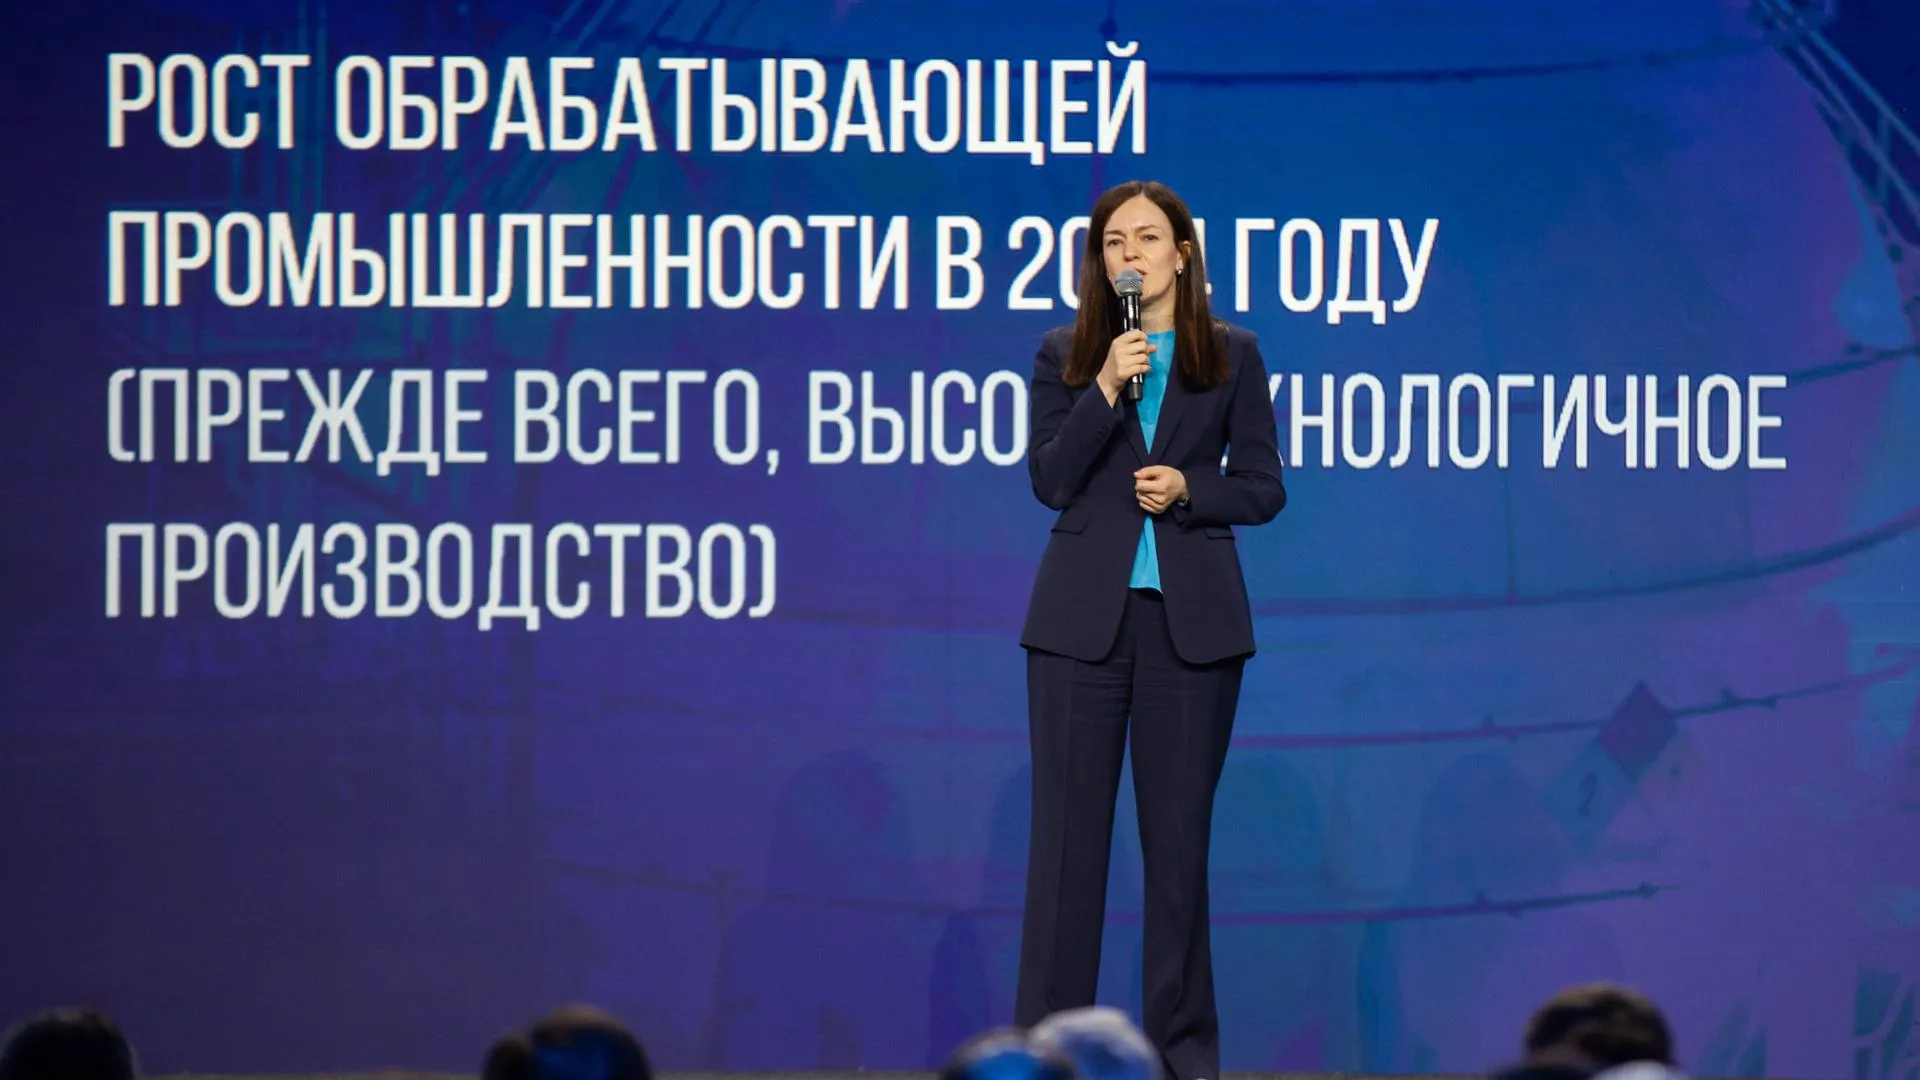 Мария Багреева: рост производительности труда - ключевой фактор экономразвития